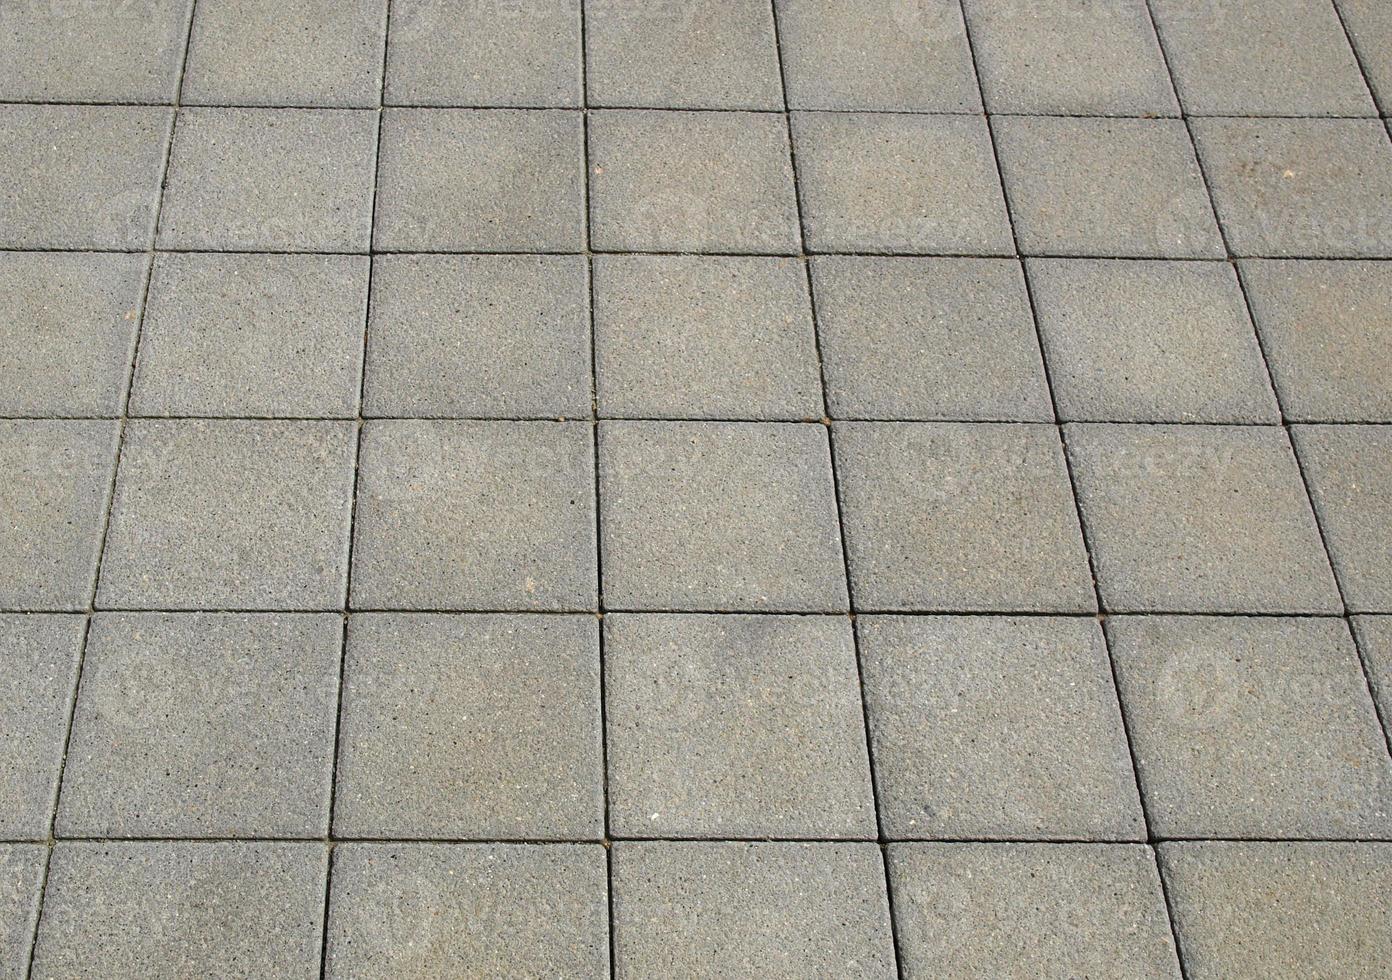 Concrete pavement texture photo